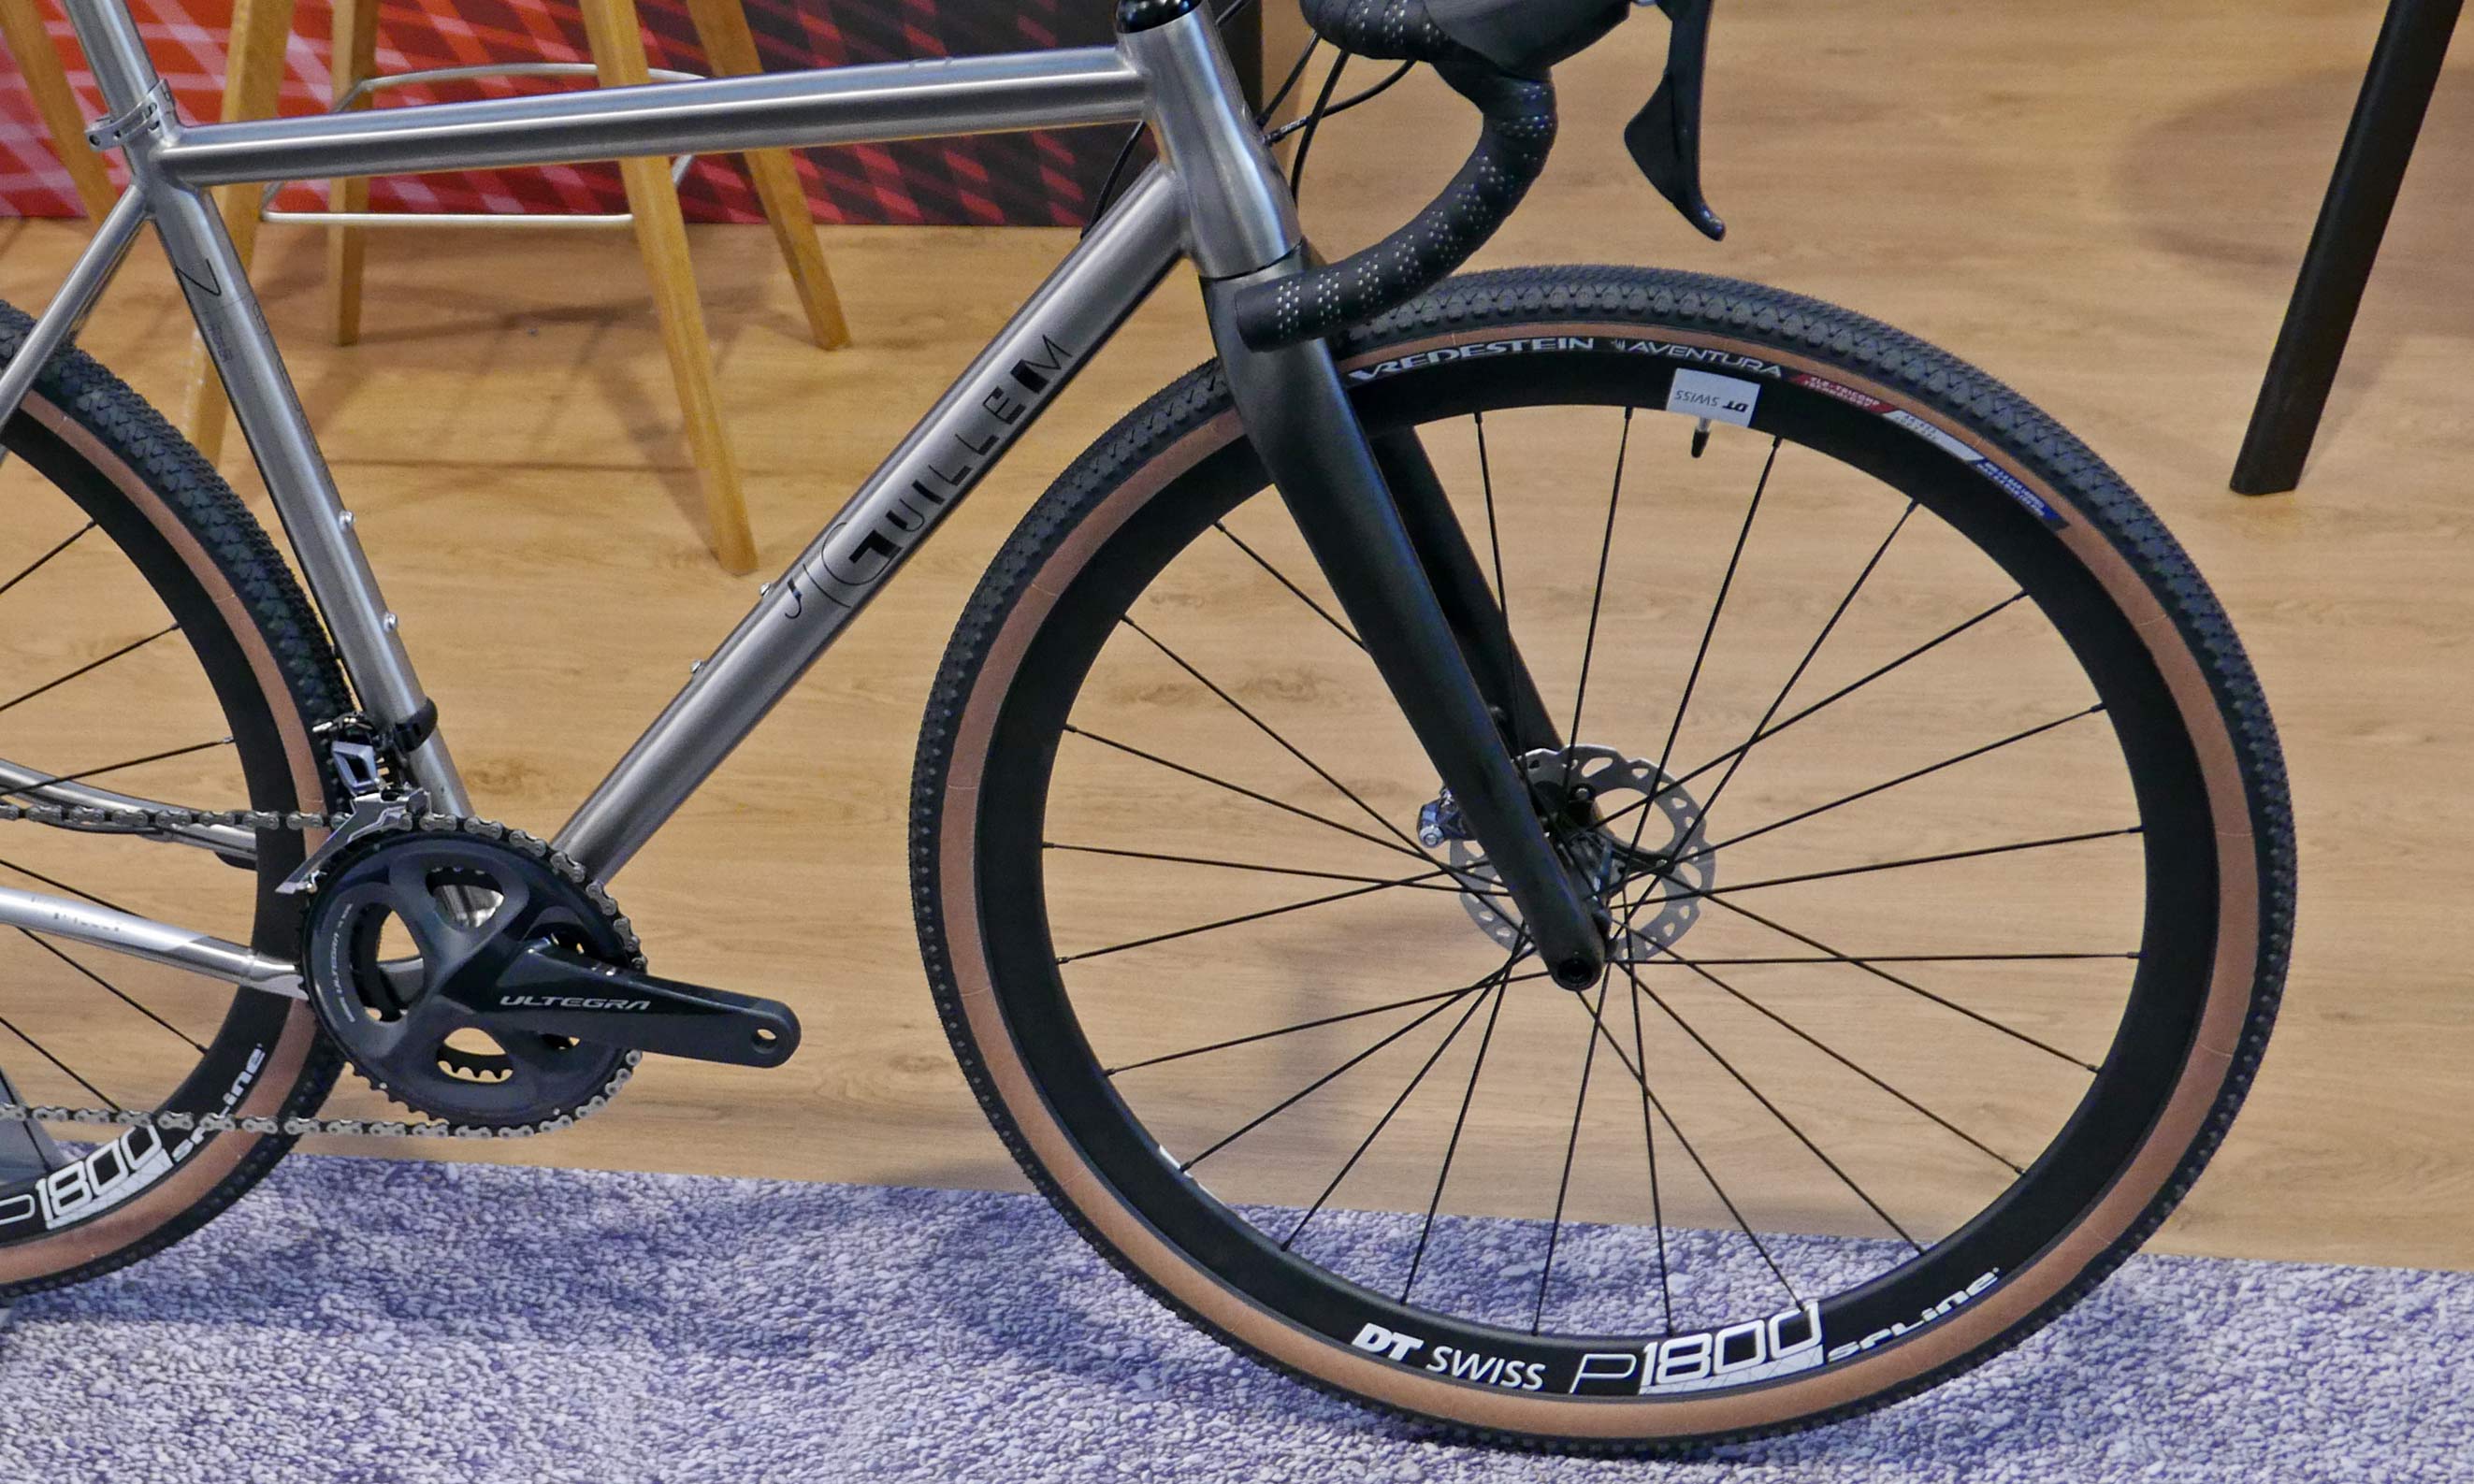 Vredestein Aventura gravel tire, fast-rolling 700c gravel bike tires